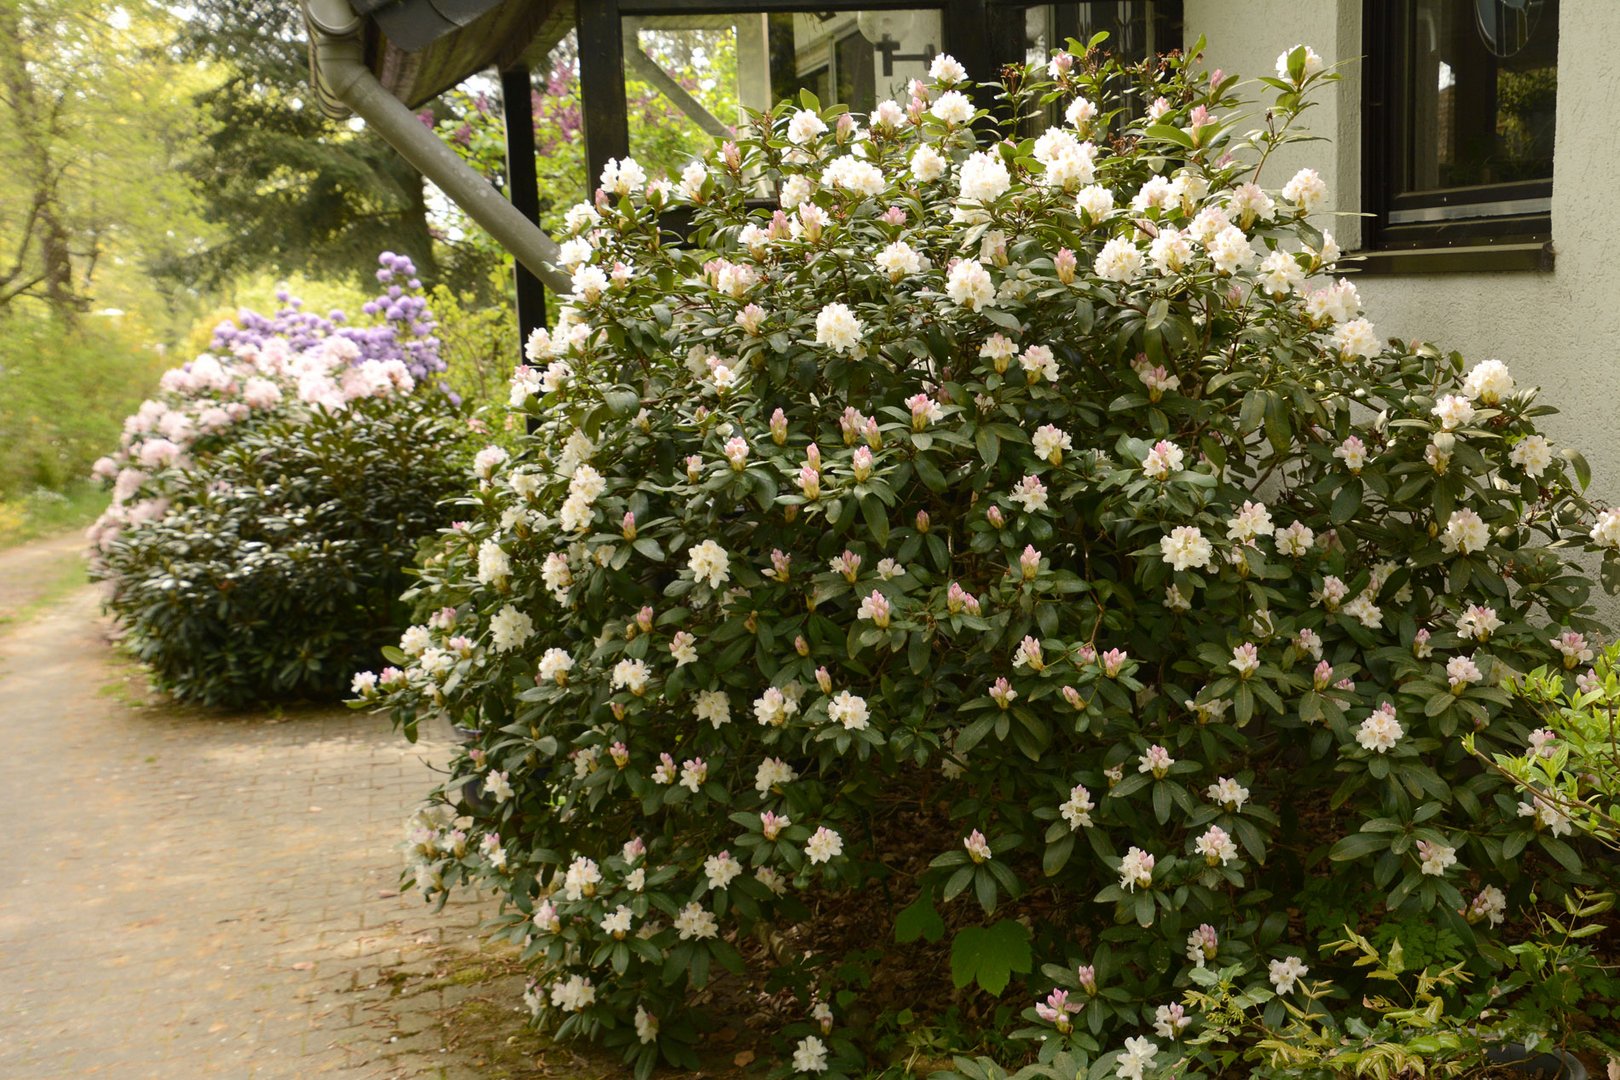 Endlich blüht auch der weiße Rhododendron am Hauseingang.